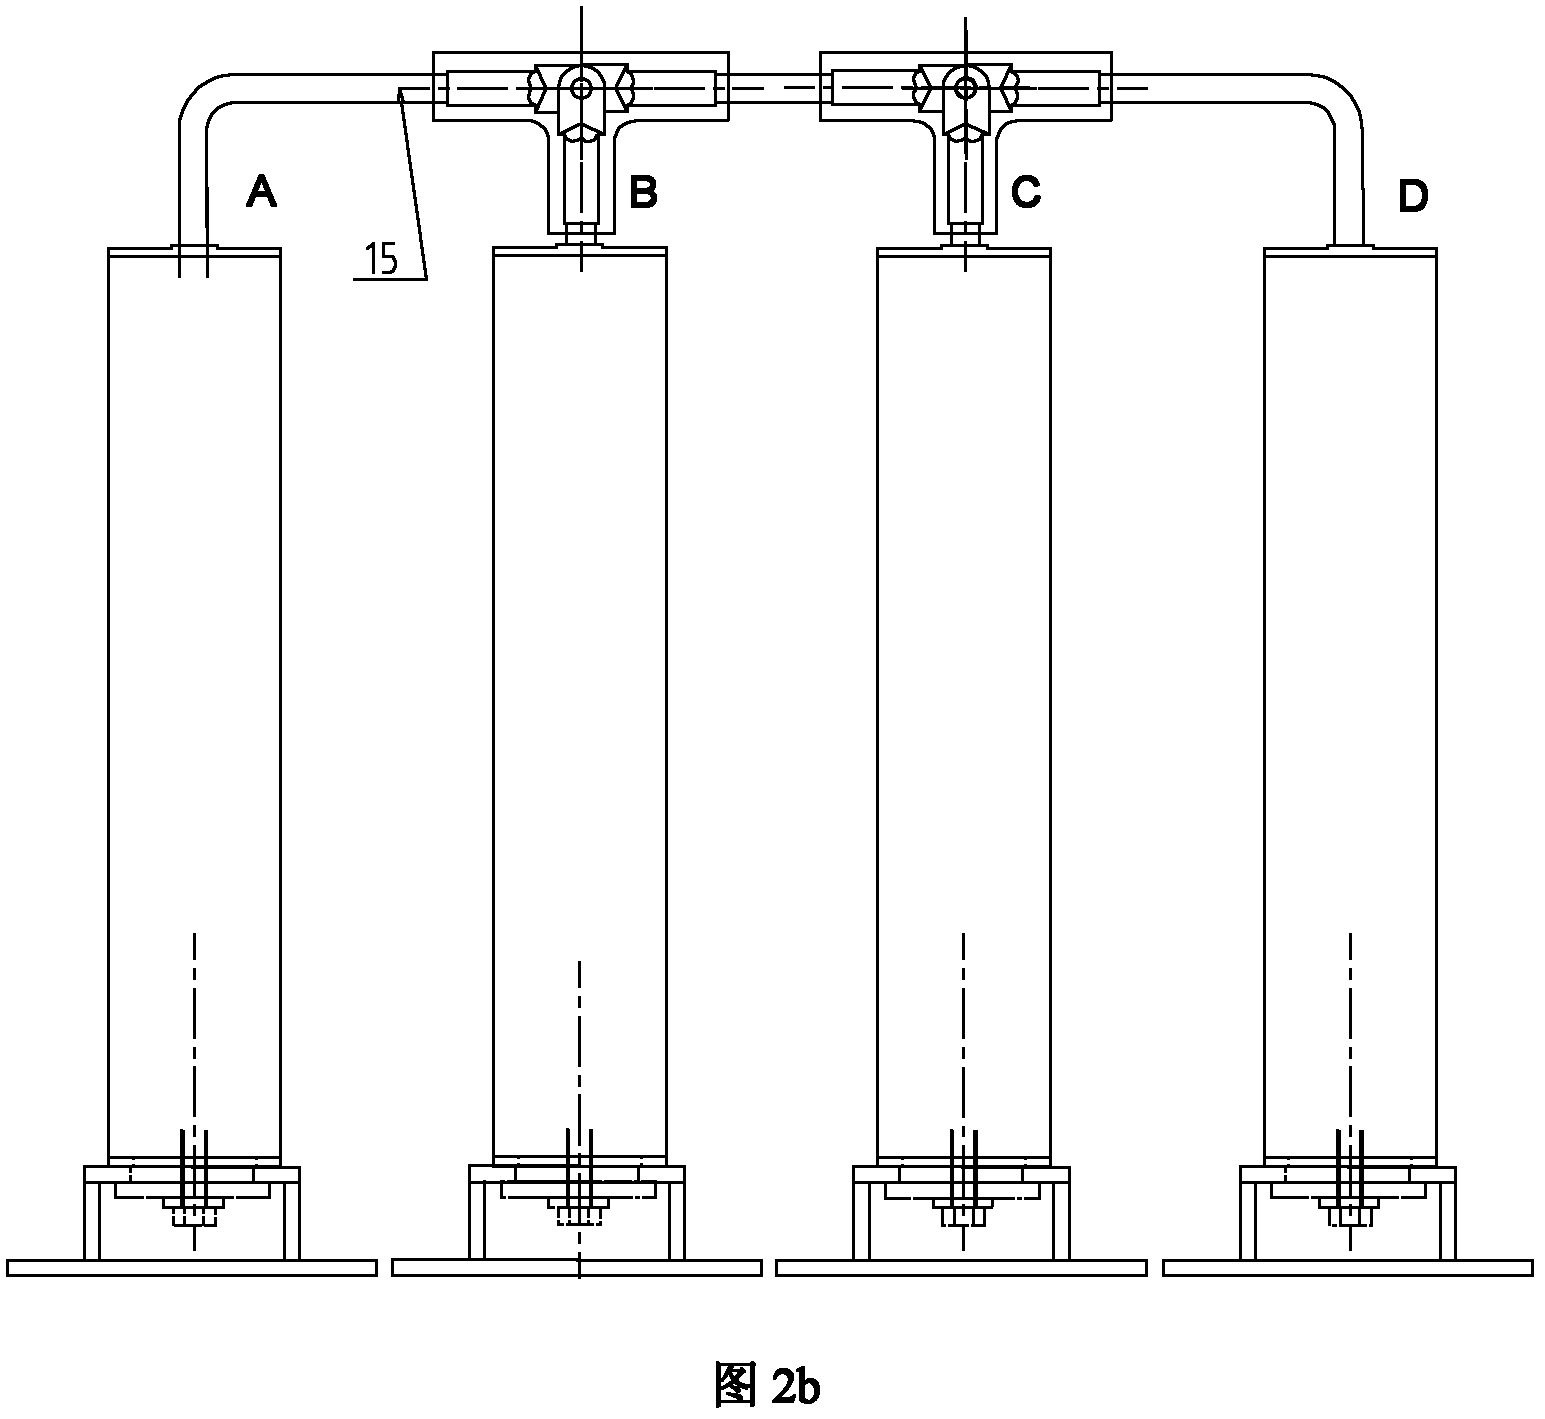 Split column, split combined overvoltage protector